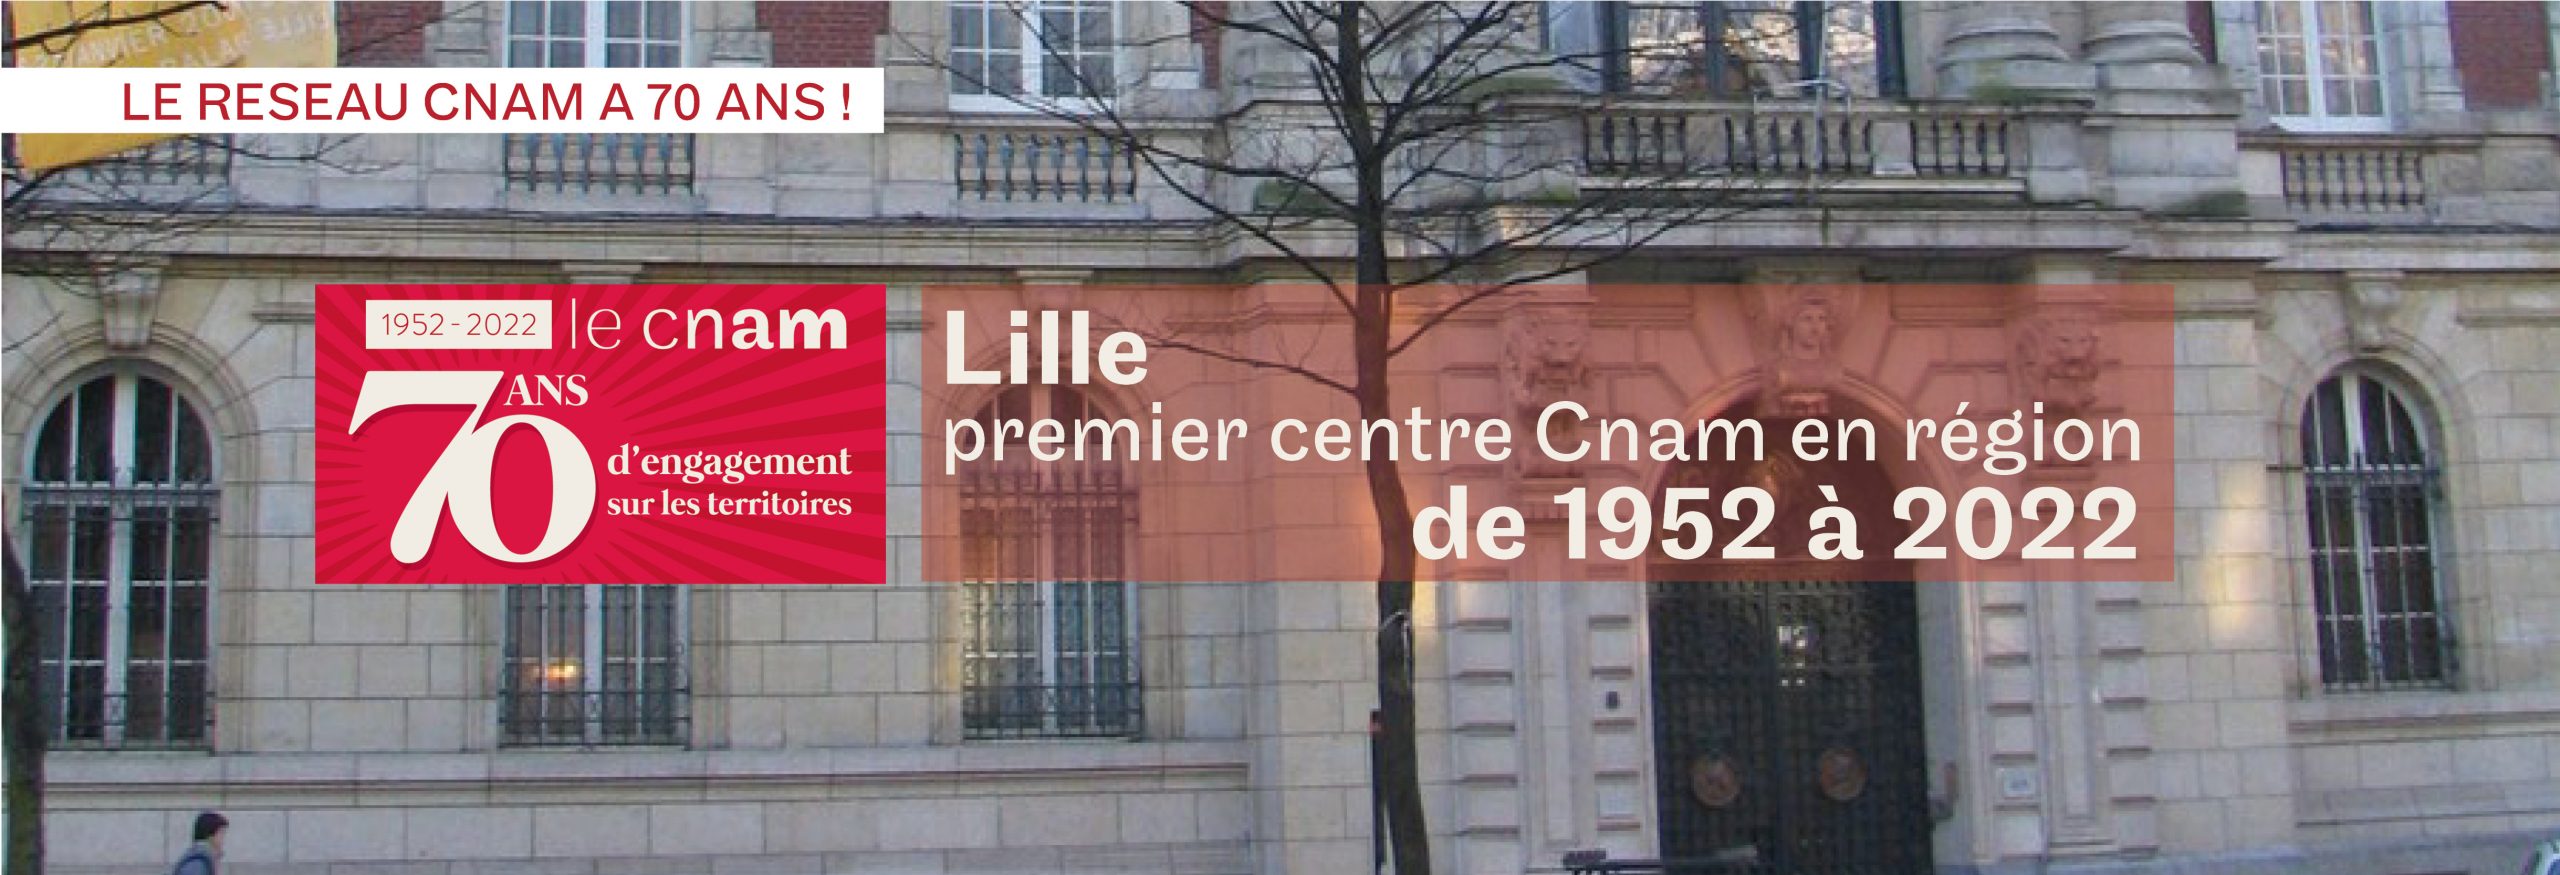 Le réseau Cnam a 70 ans - Lille, premier centre Cnam en région : de 1952 à 2022